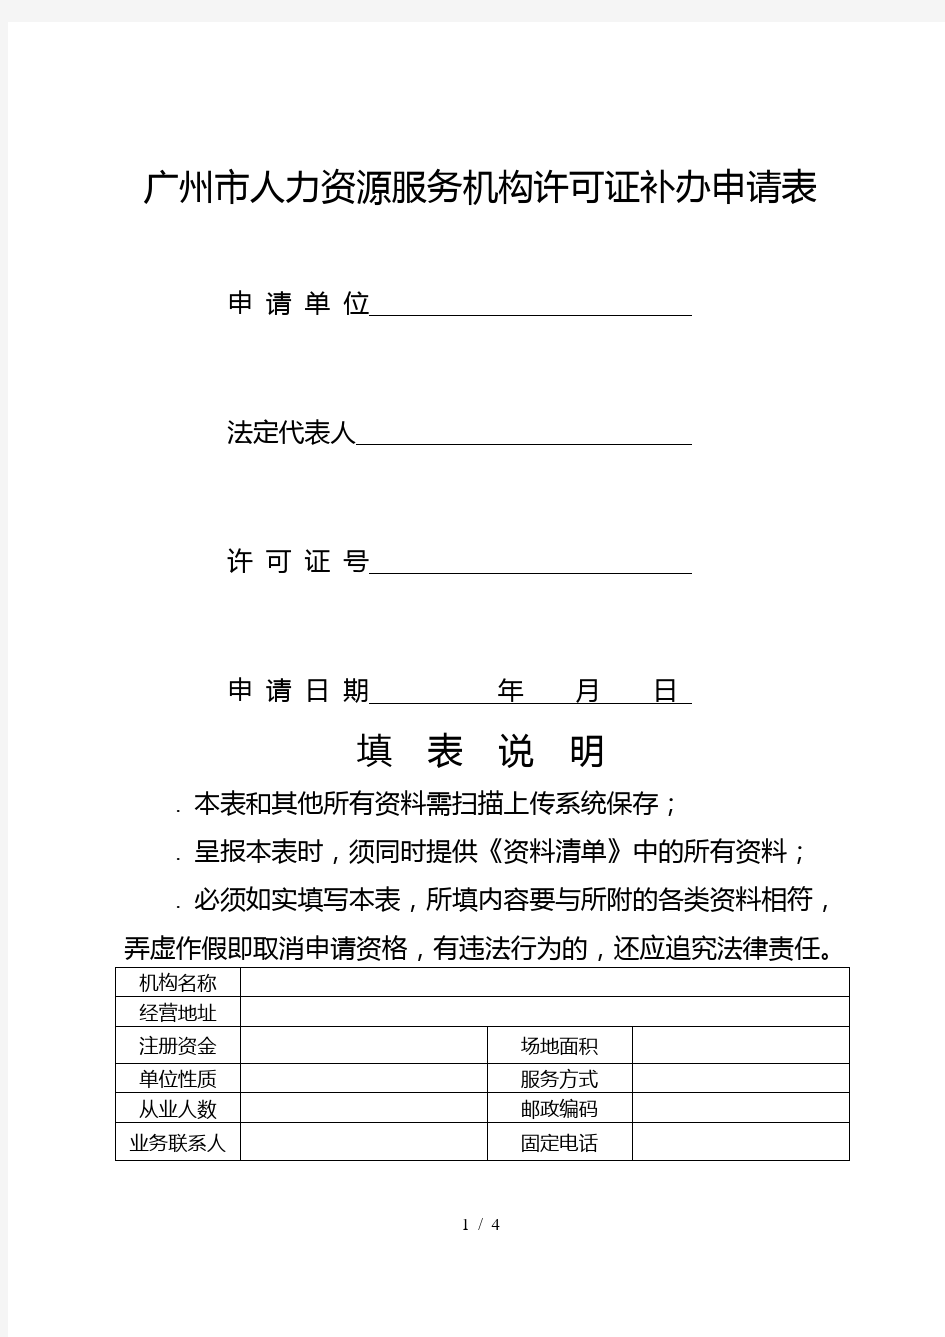 广州市人力资源服务机构许可证补办申请表